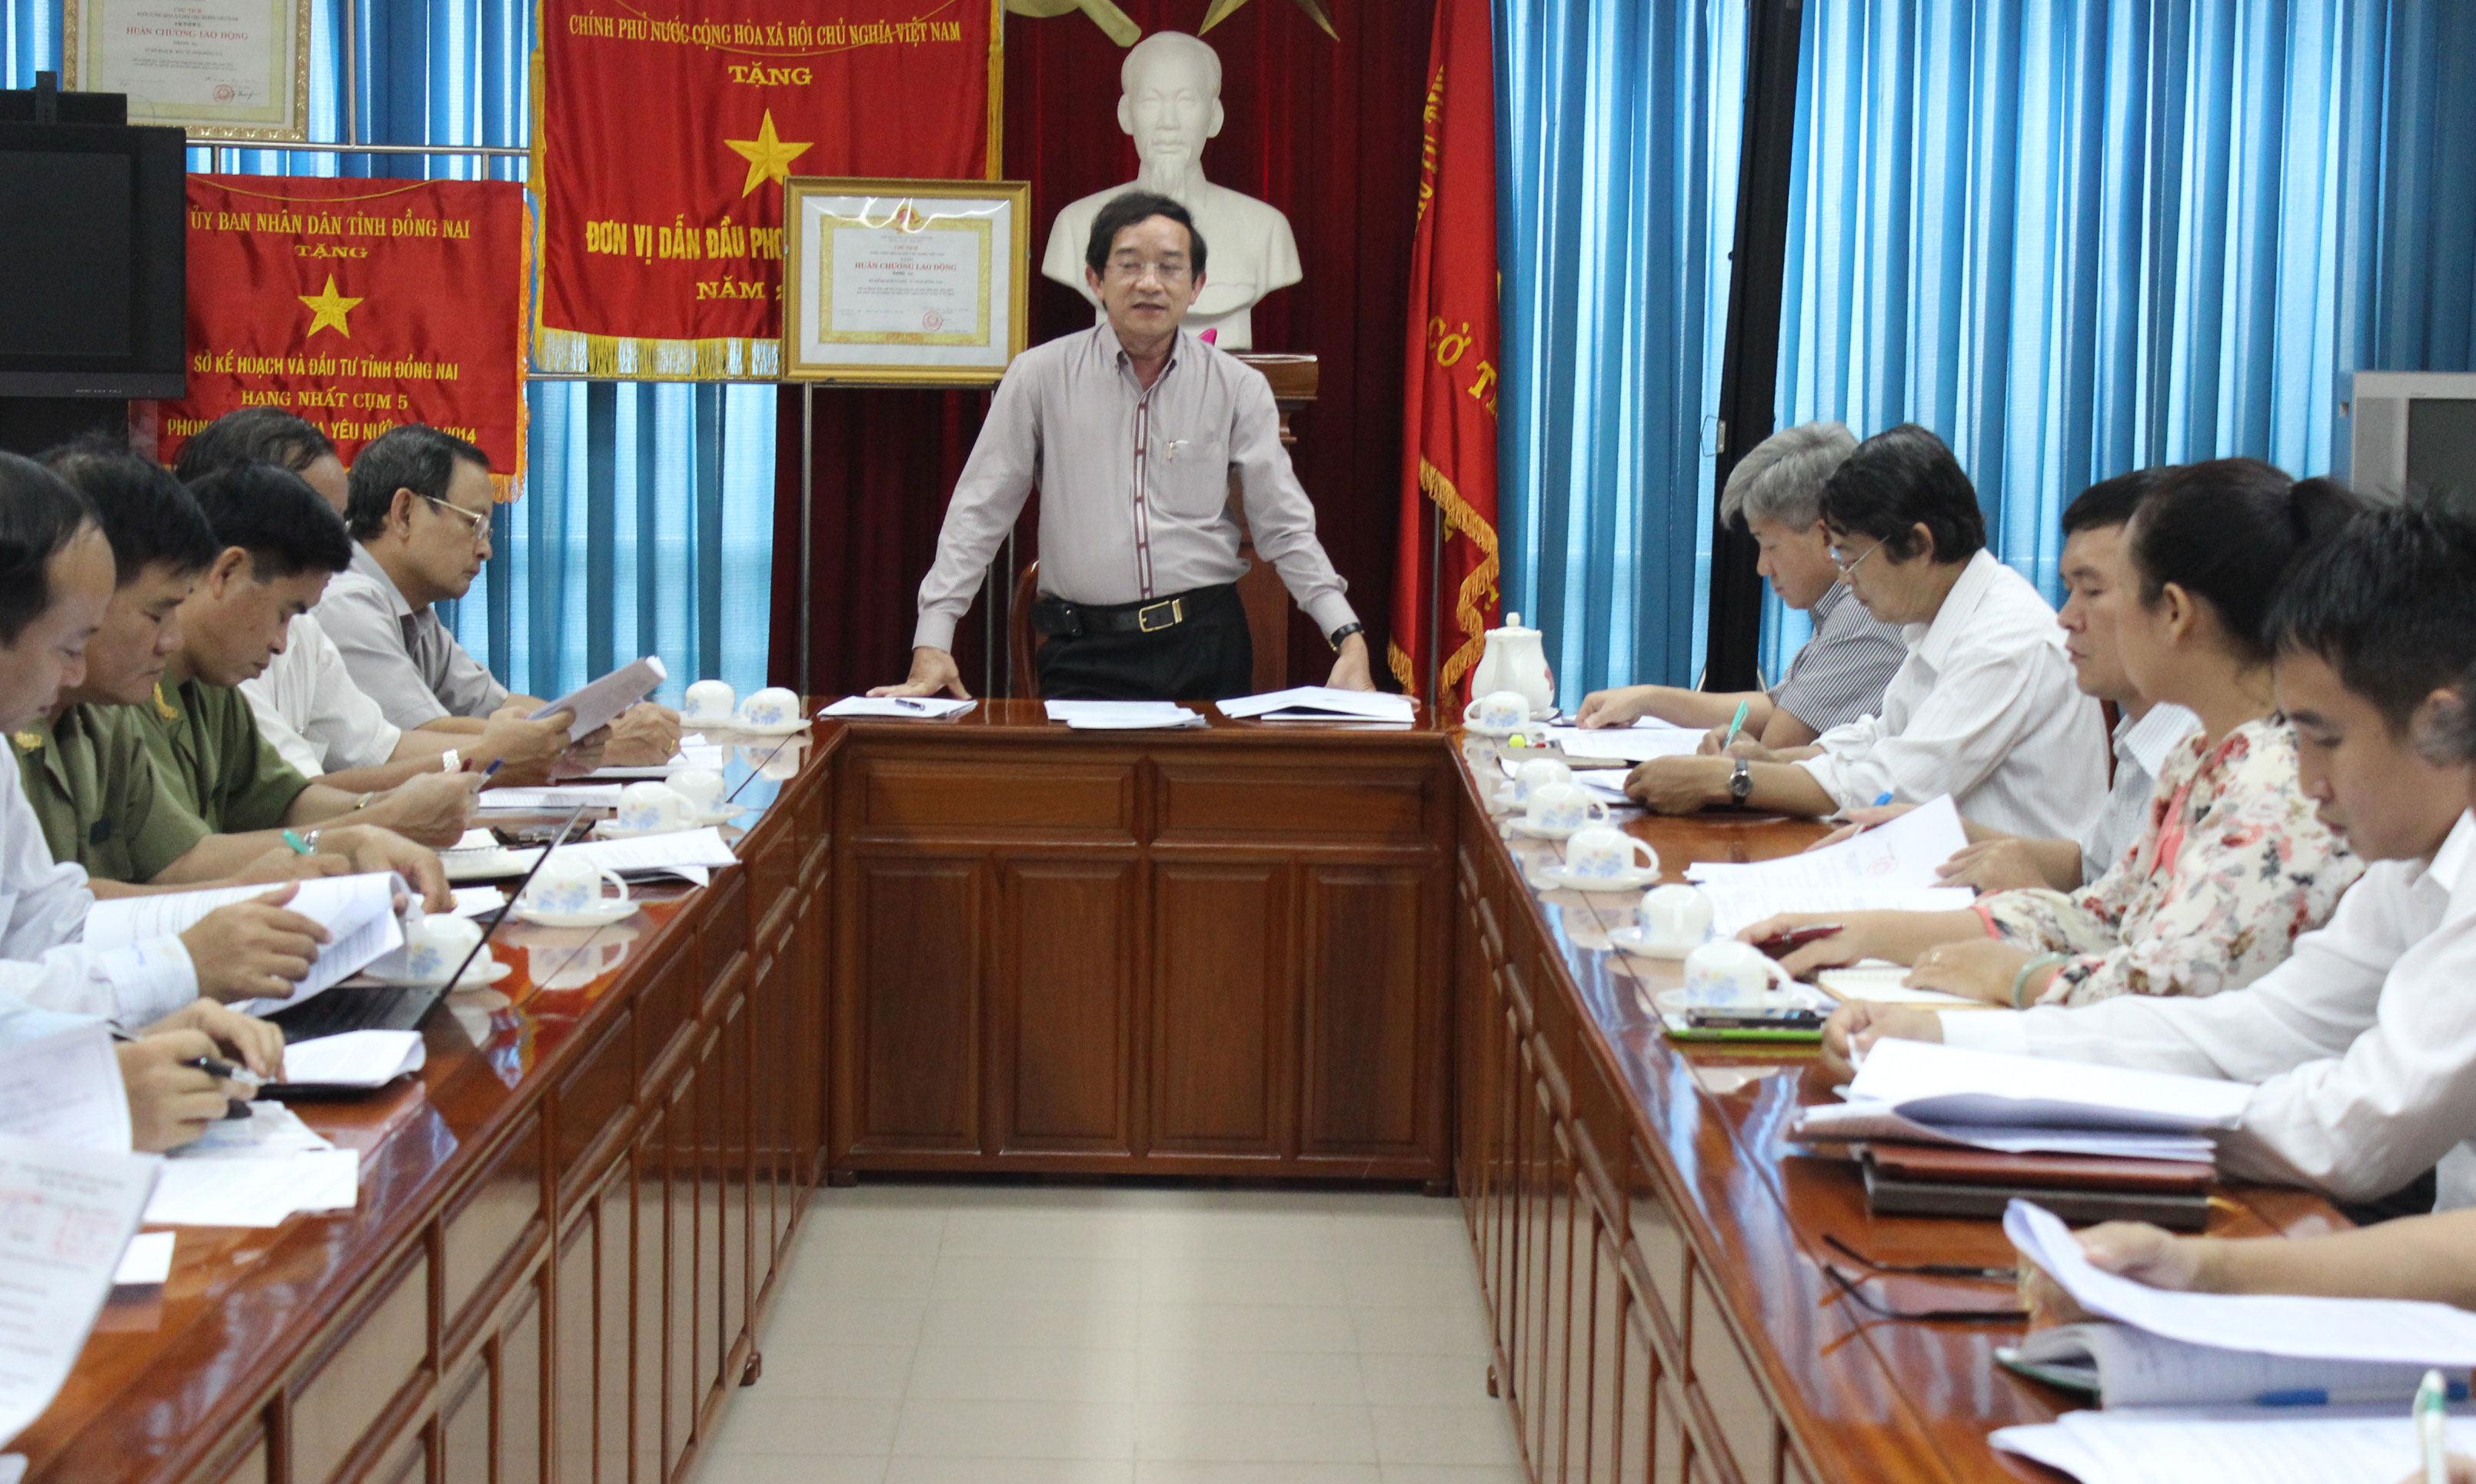 Phó chủ tịch UBND tỉnh Nguyễn Thành Trí phát biều tại buổi họp.